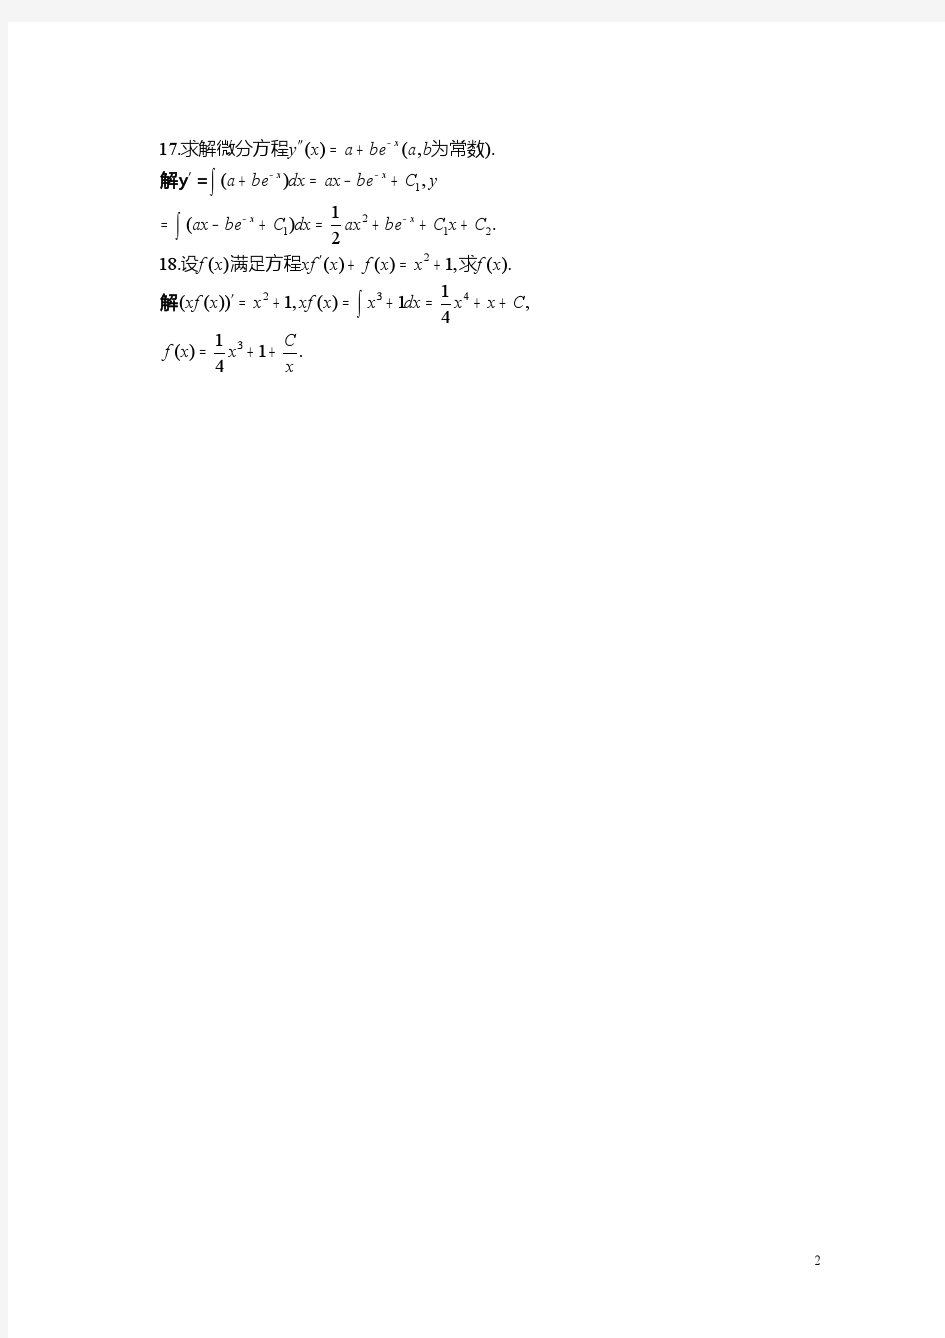 北大版高等数学第二章_微积分的基本概念答案_习题2.5